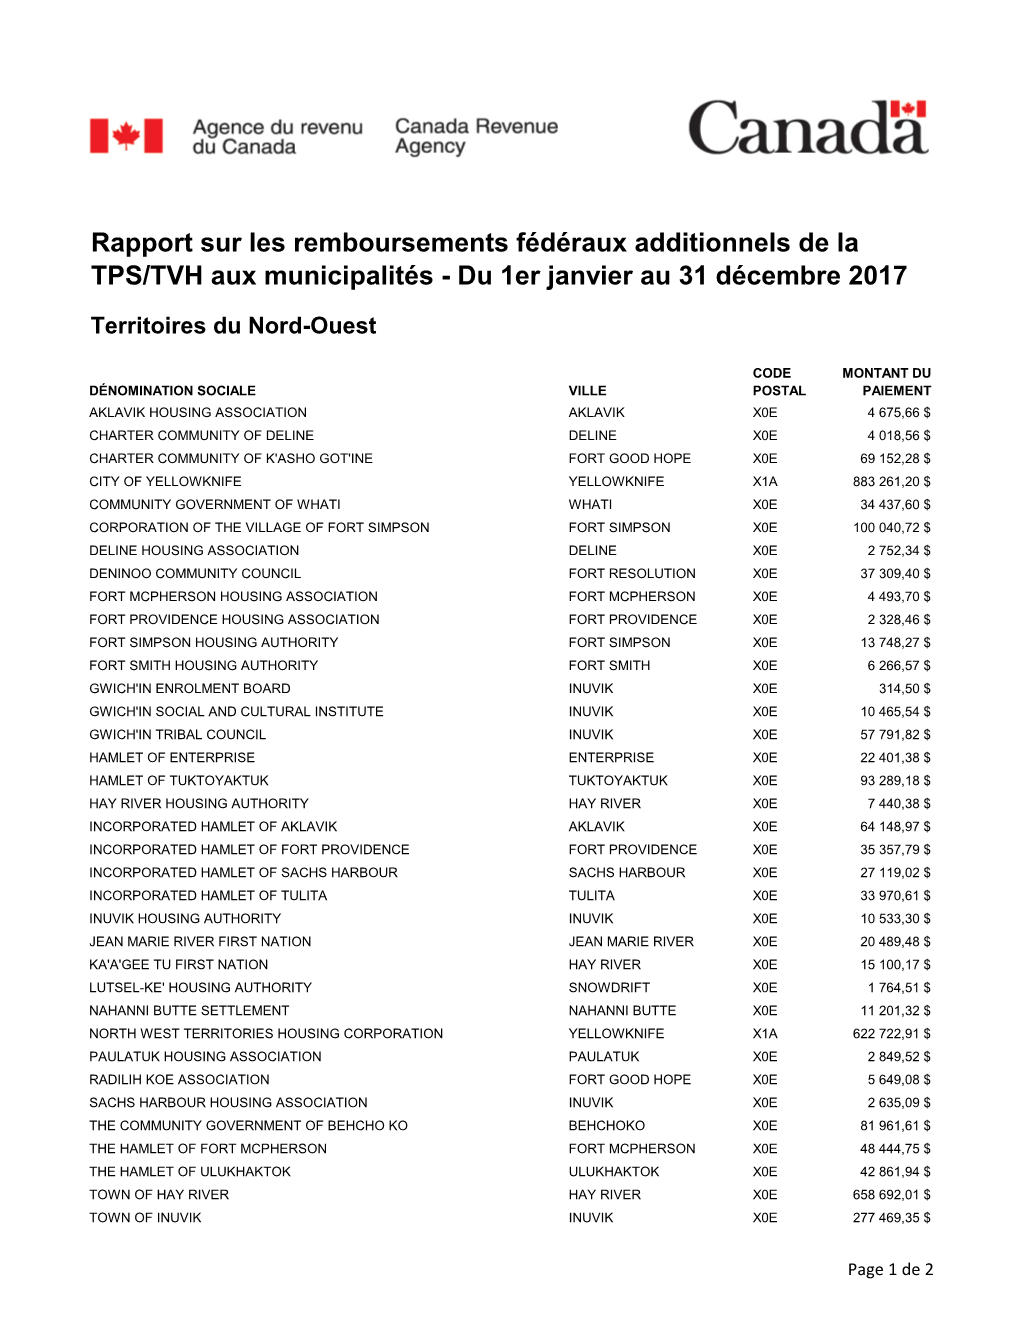 Rapport Sur Les Remboursements Fédéraux Additionnels De La TPS/TVH Aux Municipalités - Du 1Er Janvier Au 31 Décembre 2017